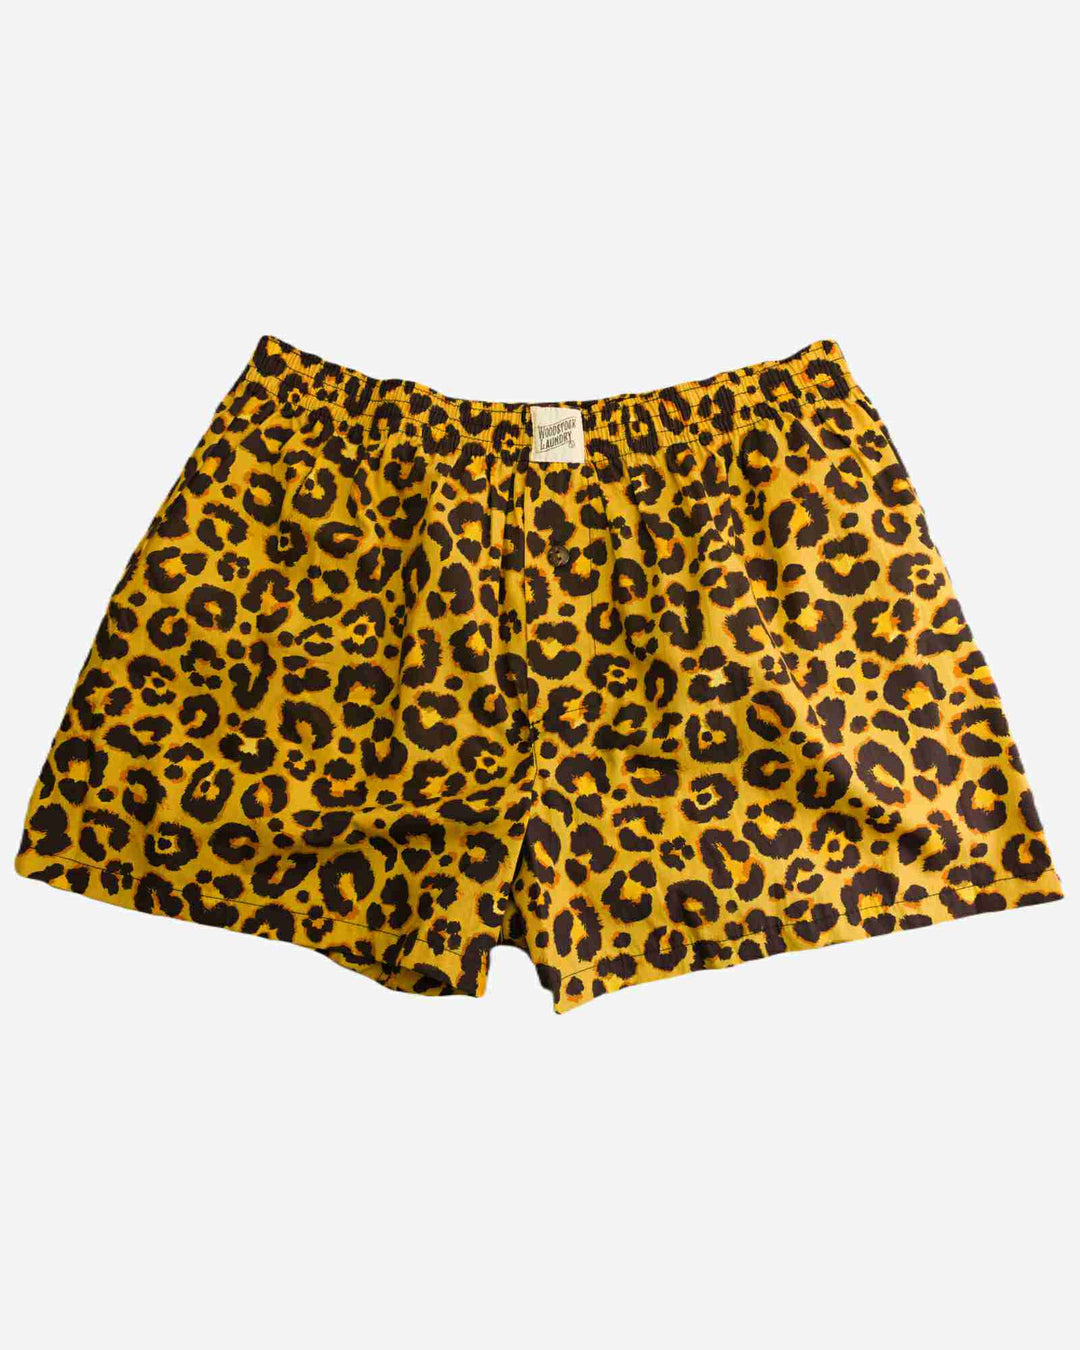 Leopard print boxers mens